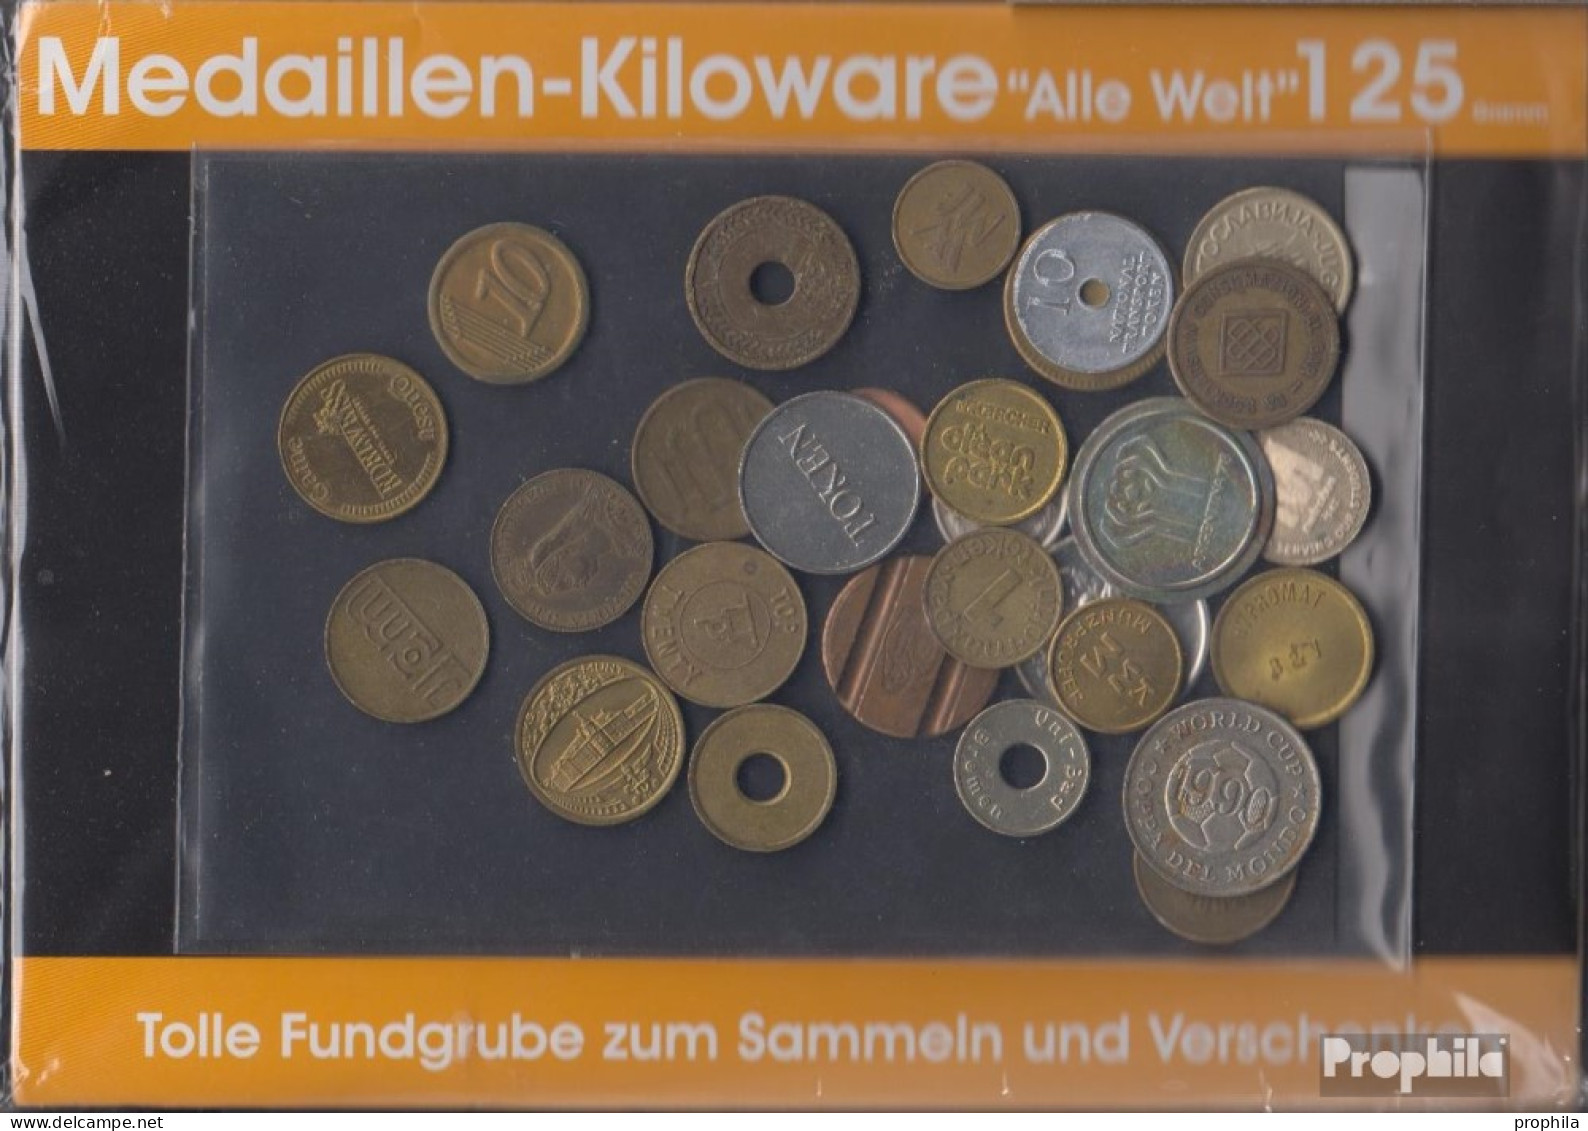 Alle Welt 125 Gramm Medaillenkiloware - Vrac - Monnaies